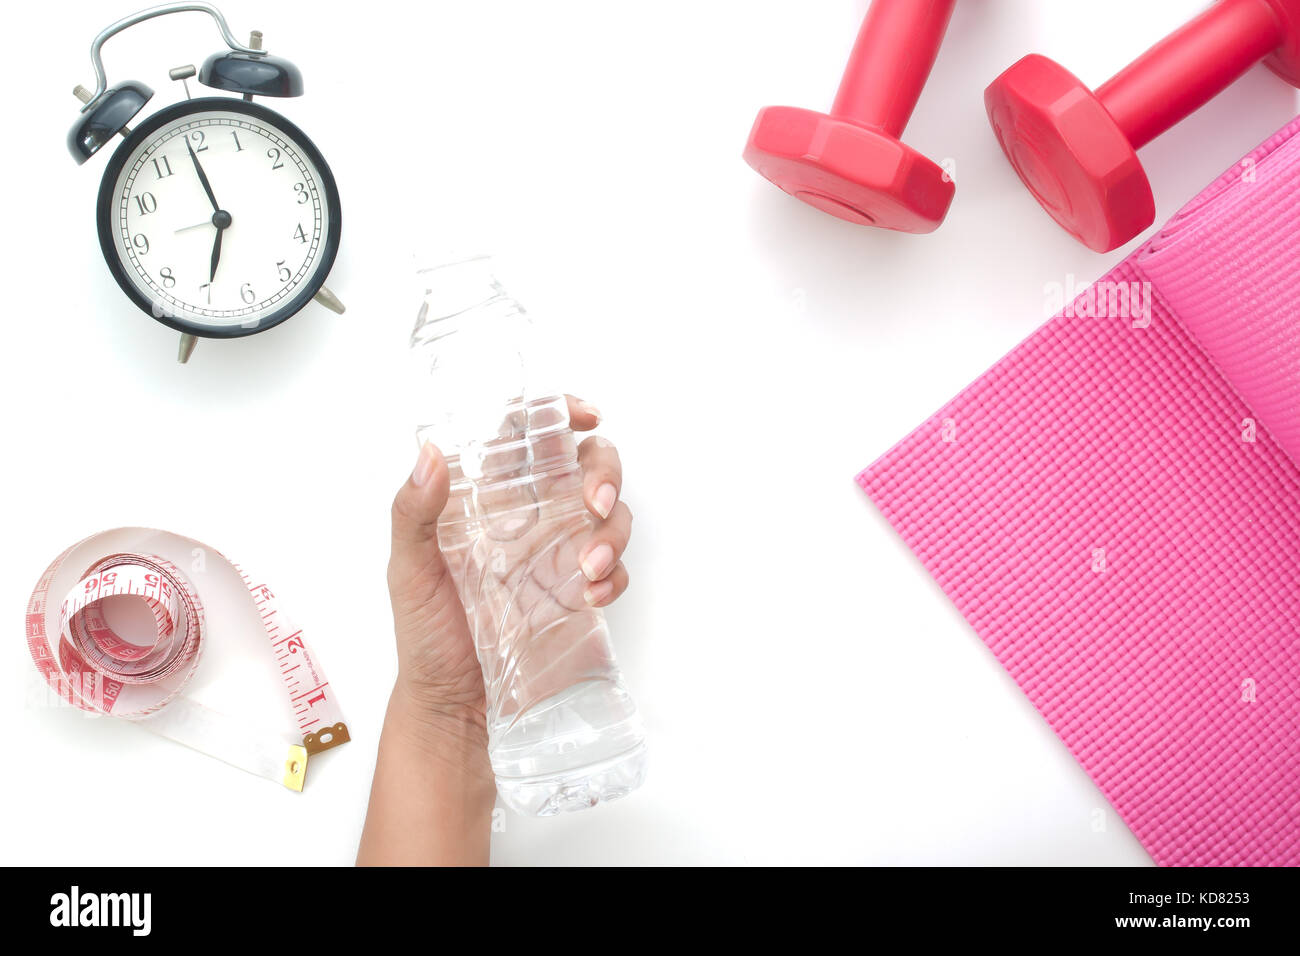 Donna mano che regge una bottiglia di acqua minerale, sano e la dieta concetto isolato su sfondo bianco Foto Stock